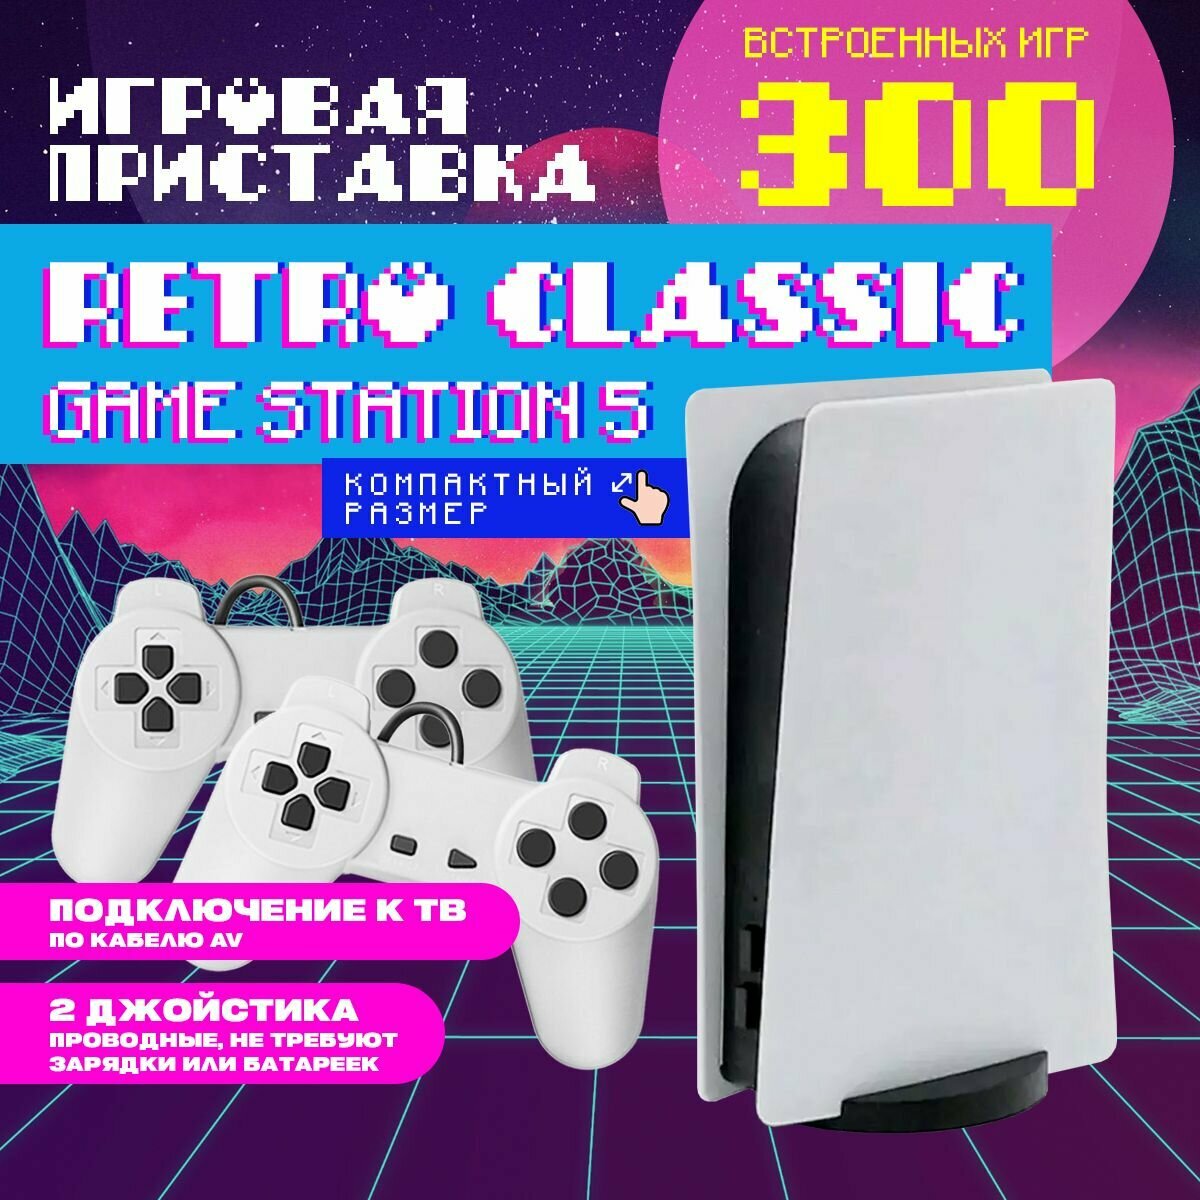 Игровая приставка для телевизора Anytrends Retro Classic GameStation 5 8bit (300 игр, AV-кабель для телевизора) + 2 проводных джойстика